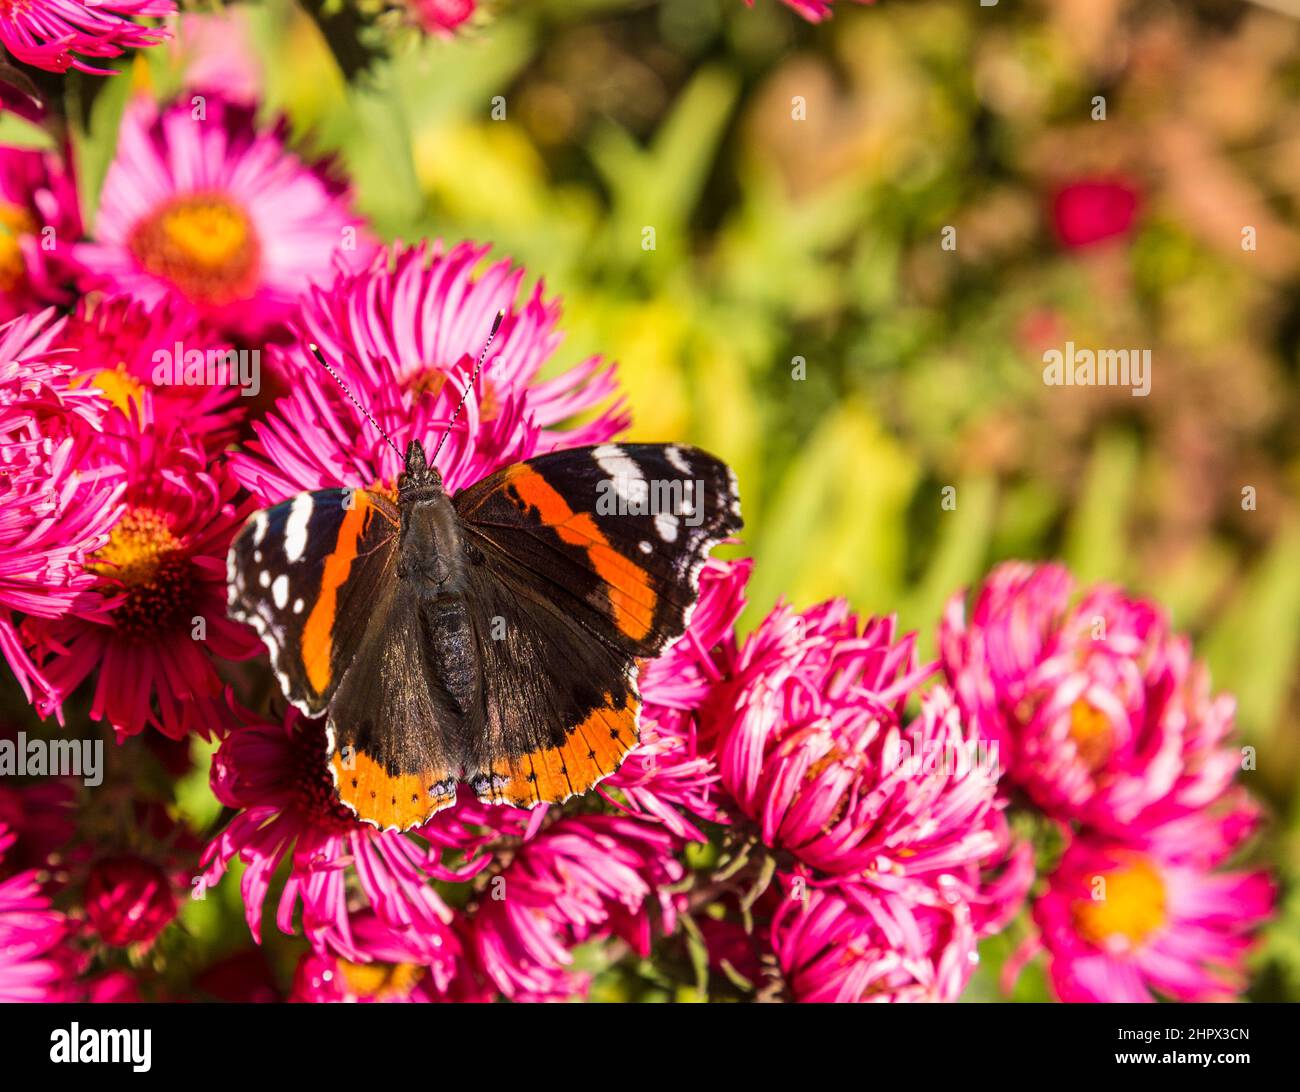 Admiral butterfly cerca cibo dolce al germoglio di fiore Foto Stock